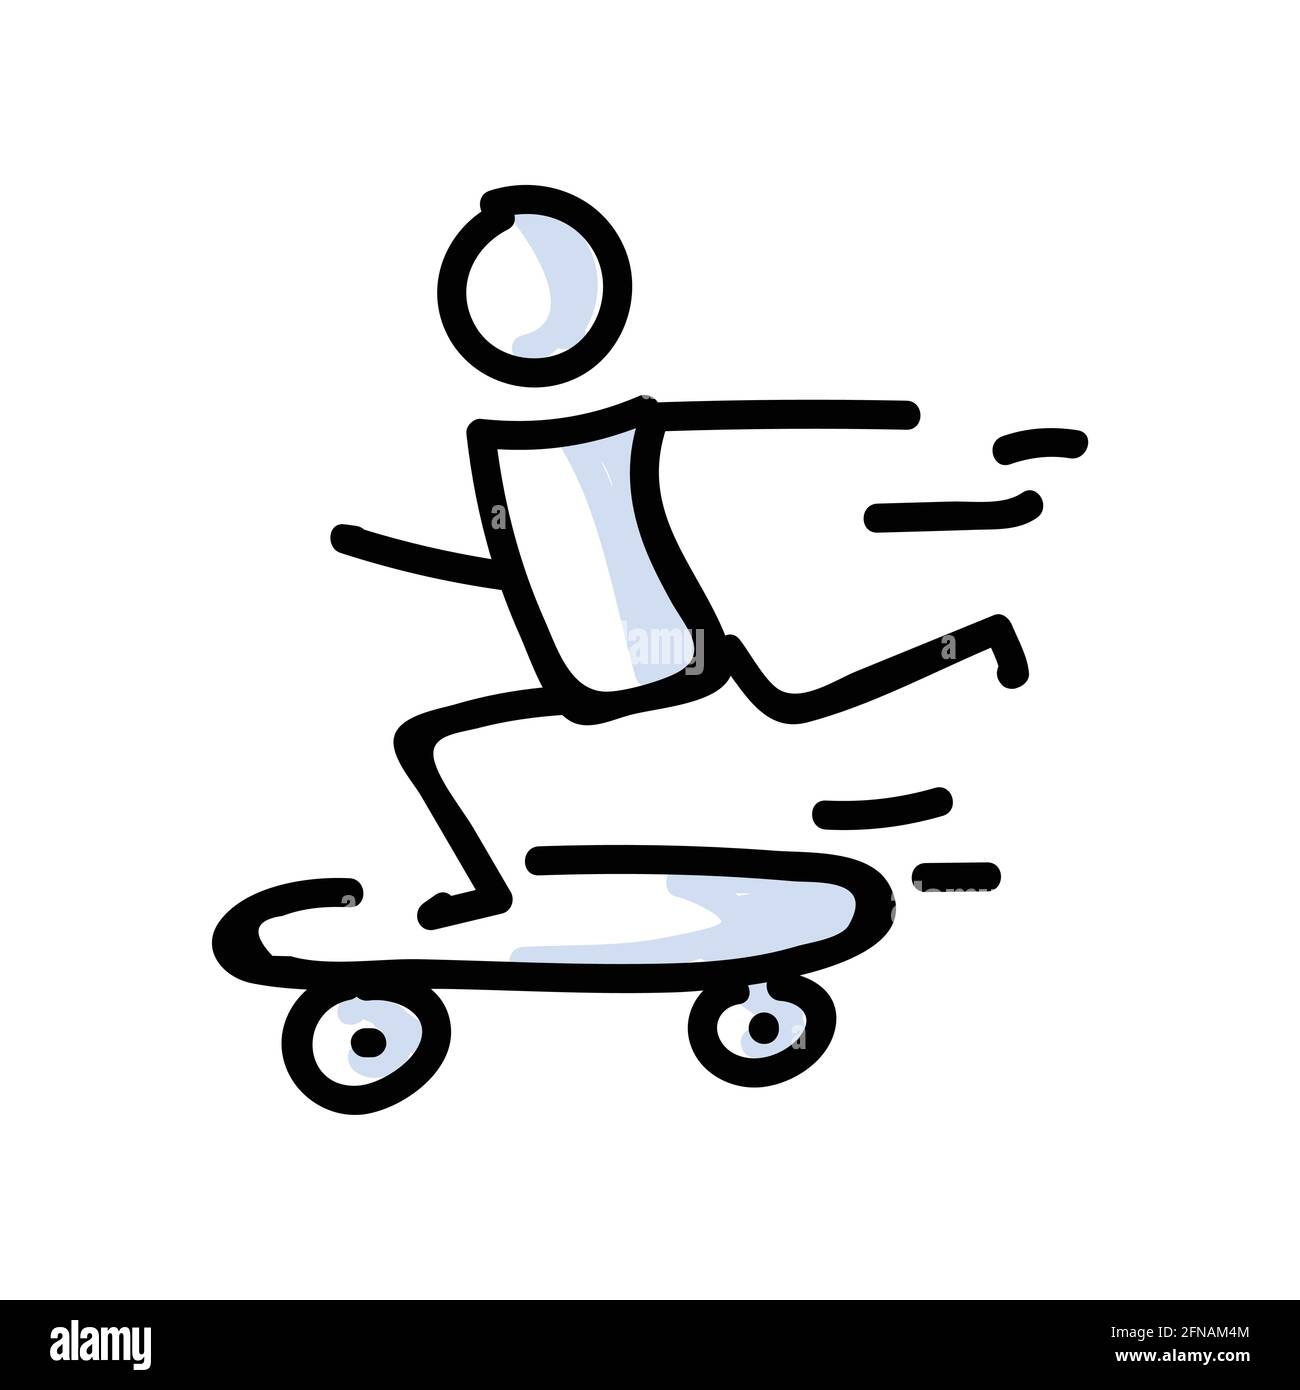 Personaggio Stick Rider disegnato a mano su skateboard. Concetto di  attività sportiva stunt. Semplice motivo icona per Teen Fun Skateboarder  Trucks. Salta, Ride, Ramp Immagine e Vettoriale - Alamy